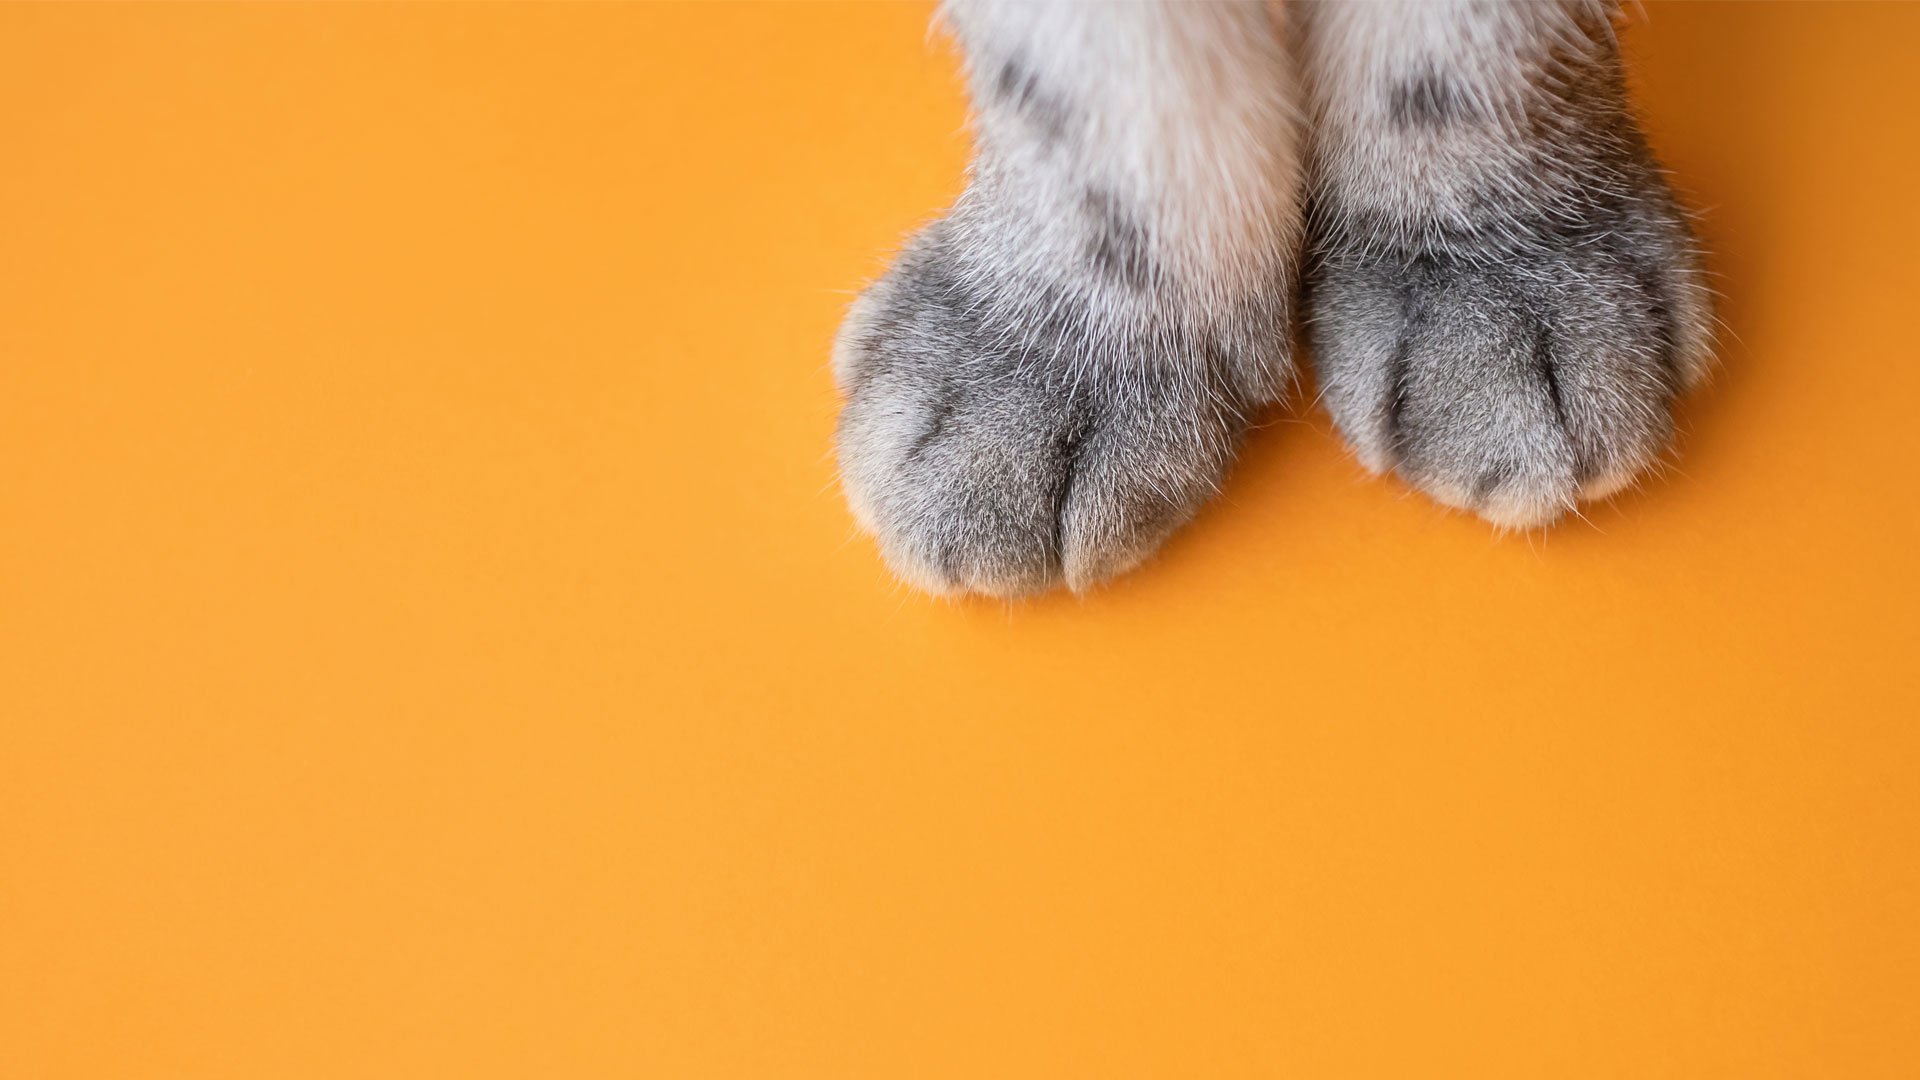 Тепло лапкам. Лапа кота. Кот на оранжевом фоне. Фон кошачьи лапки. Лапы кота сверху.